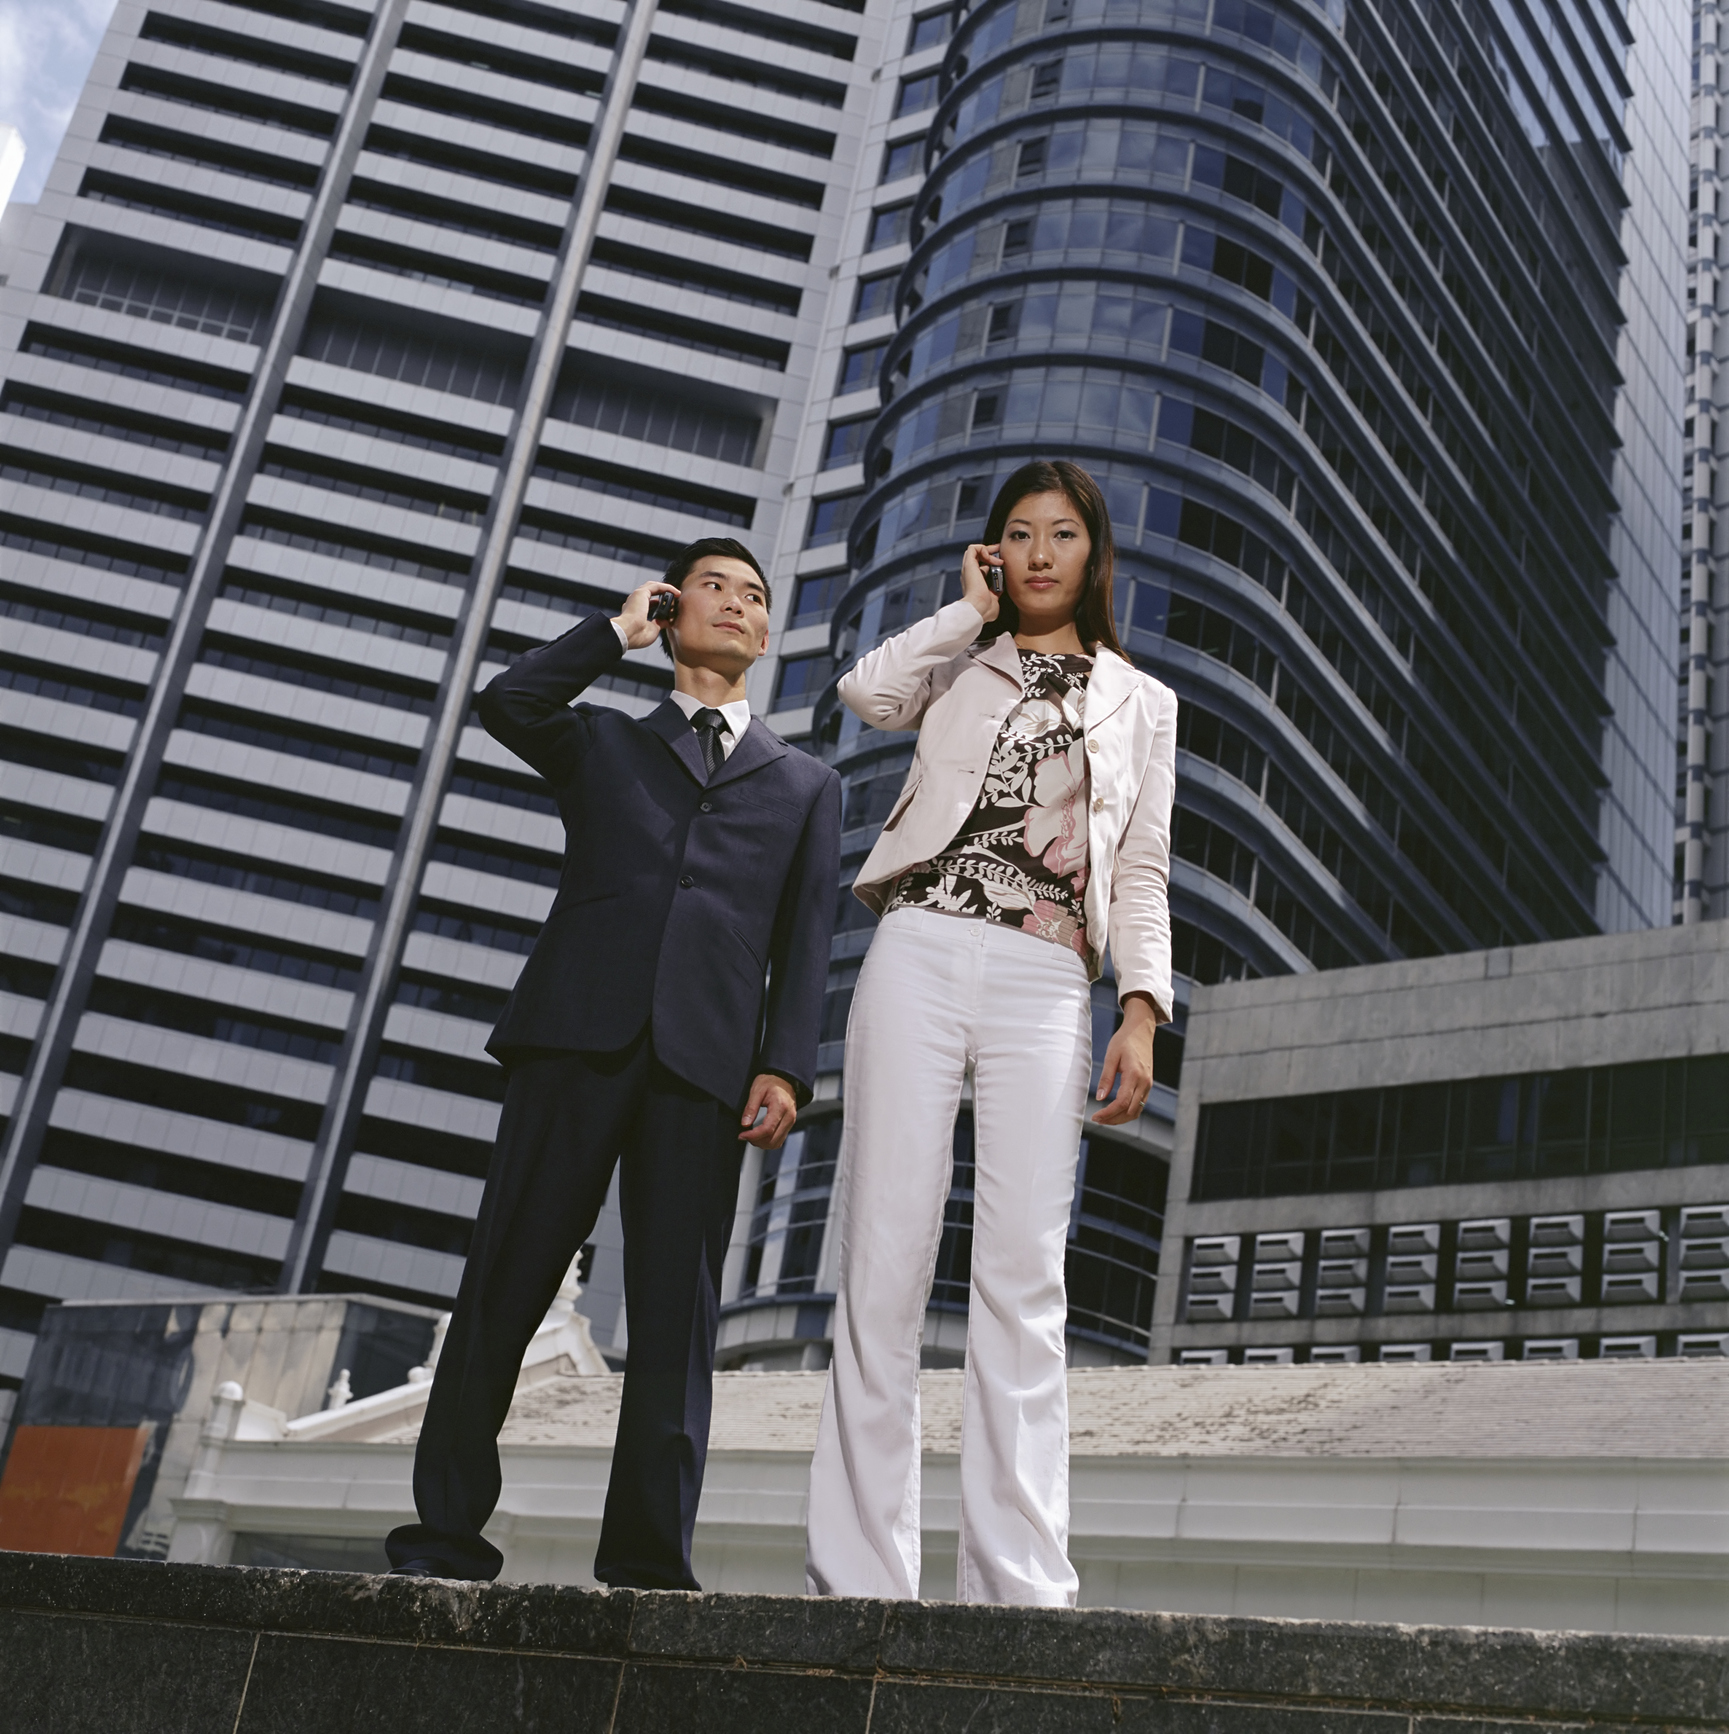 Žena a muž telefonujú z mobilov, v pozadí výškové budovy.